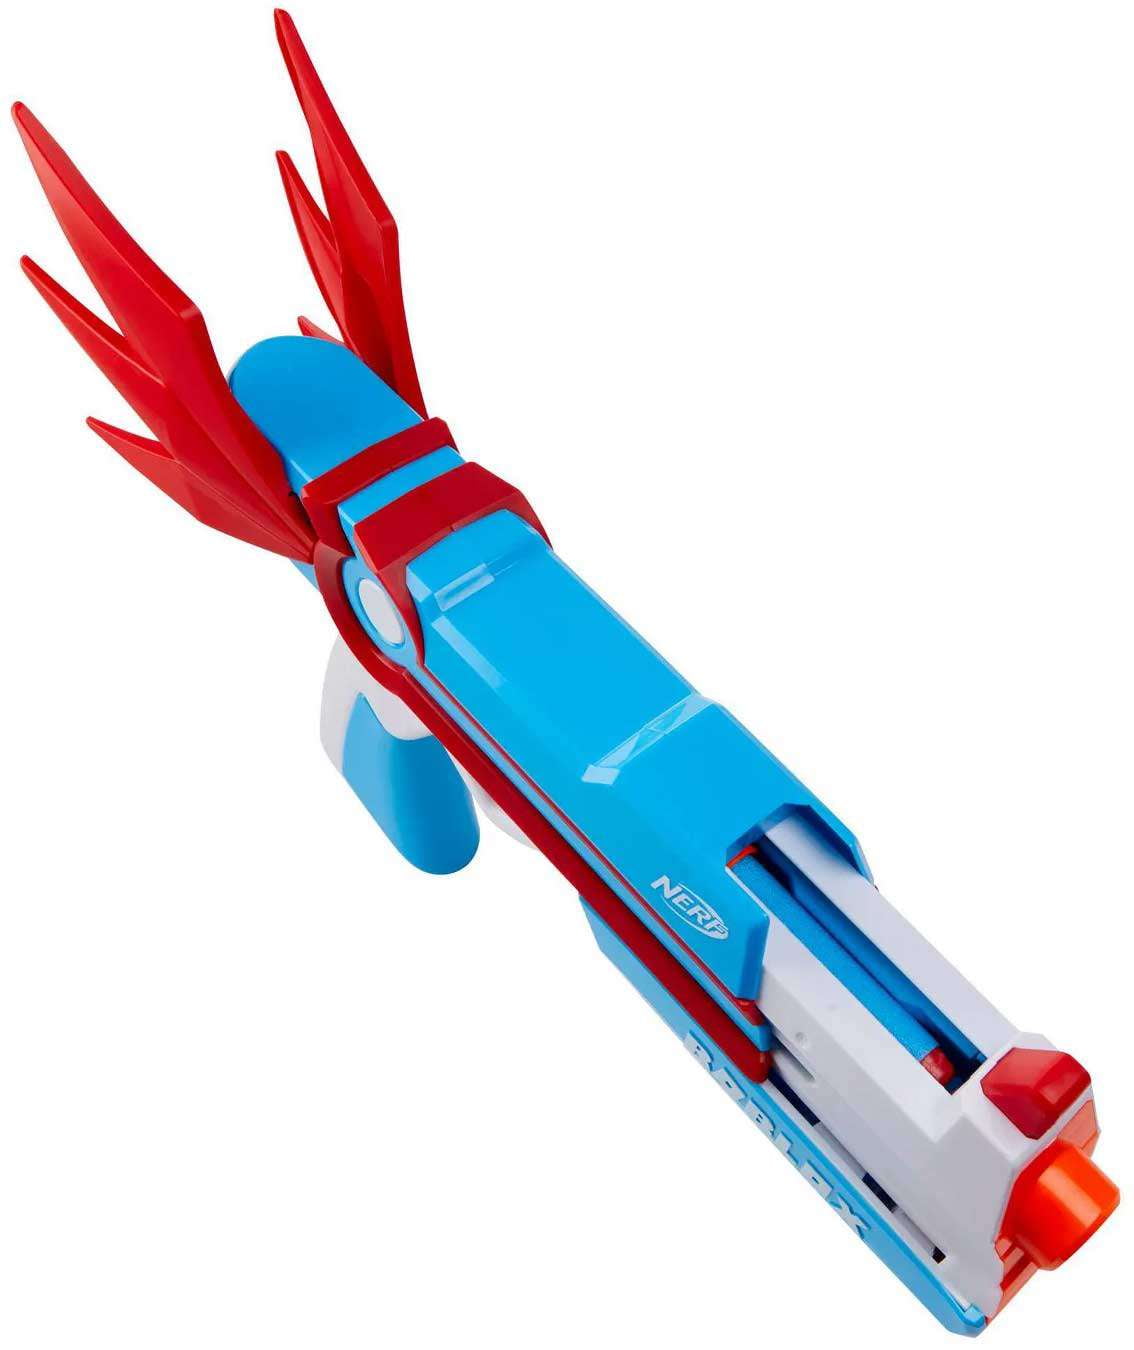 Nerf Roblox MM2 Dartbringer Dart Blaster Toy Algeria